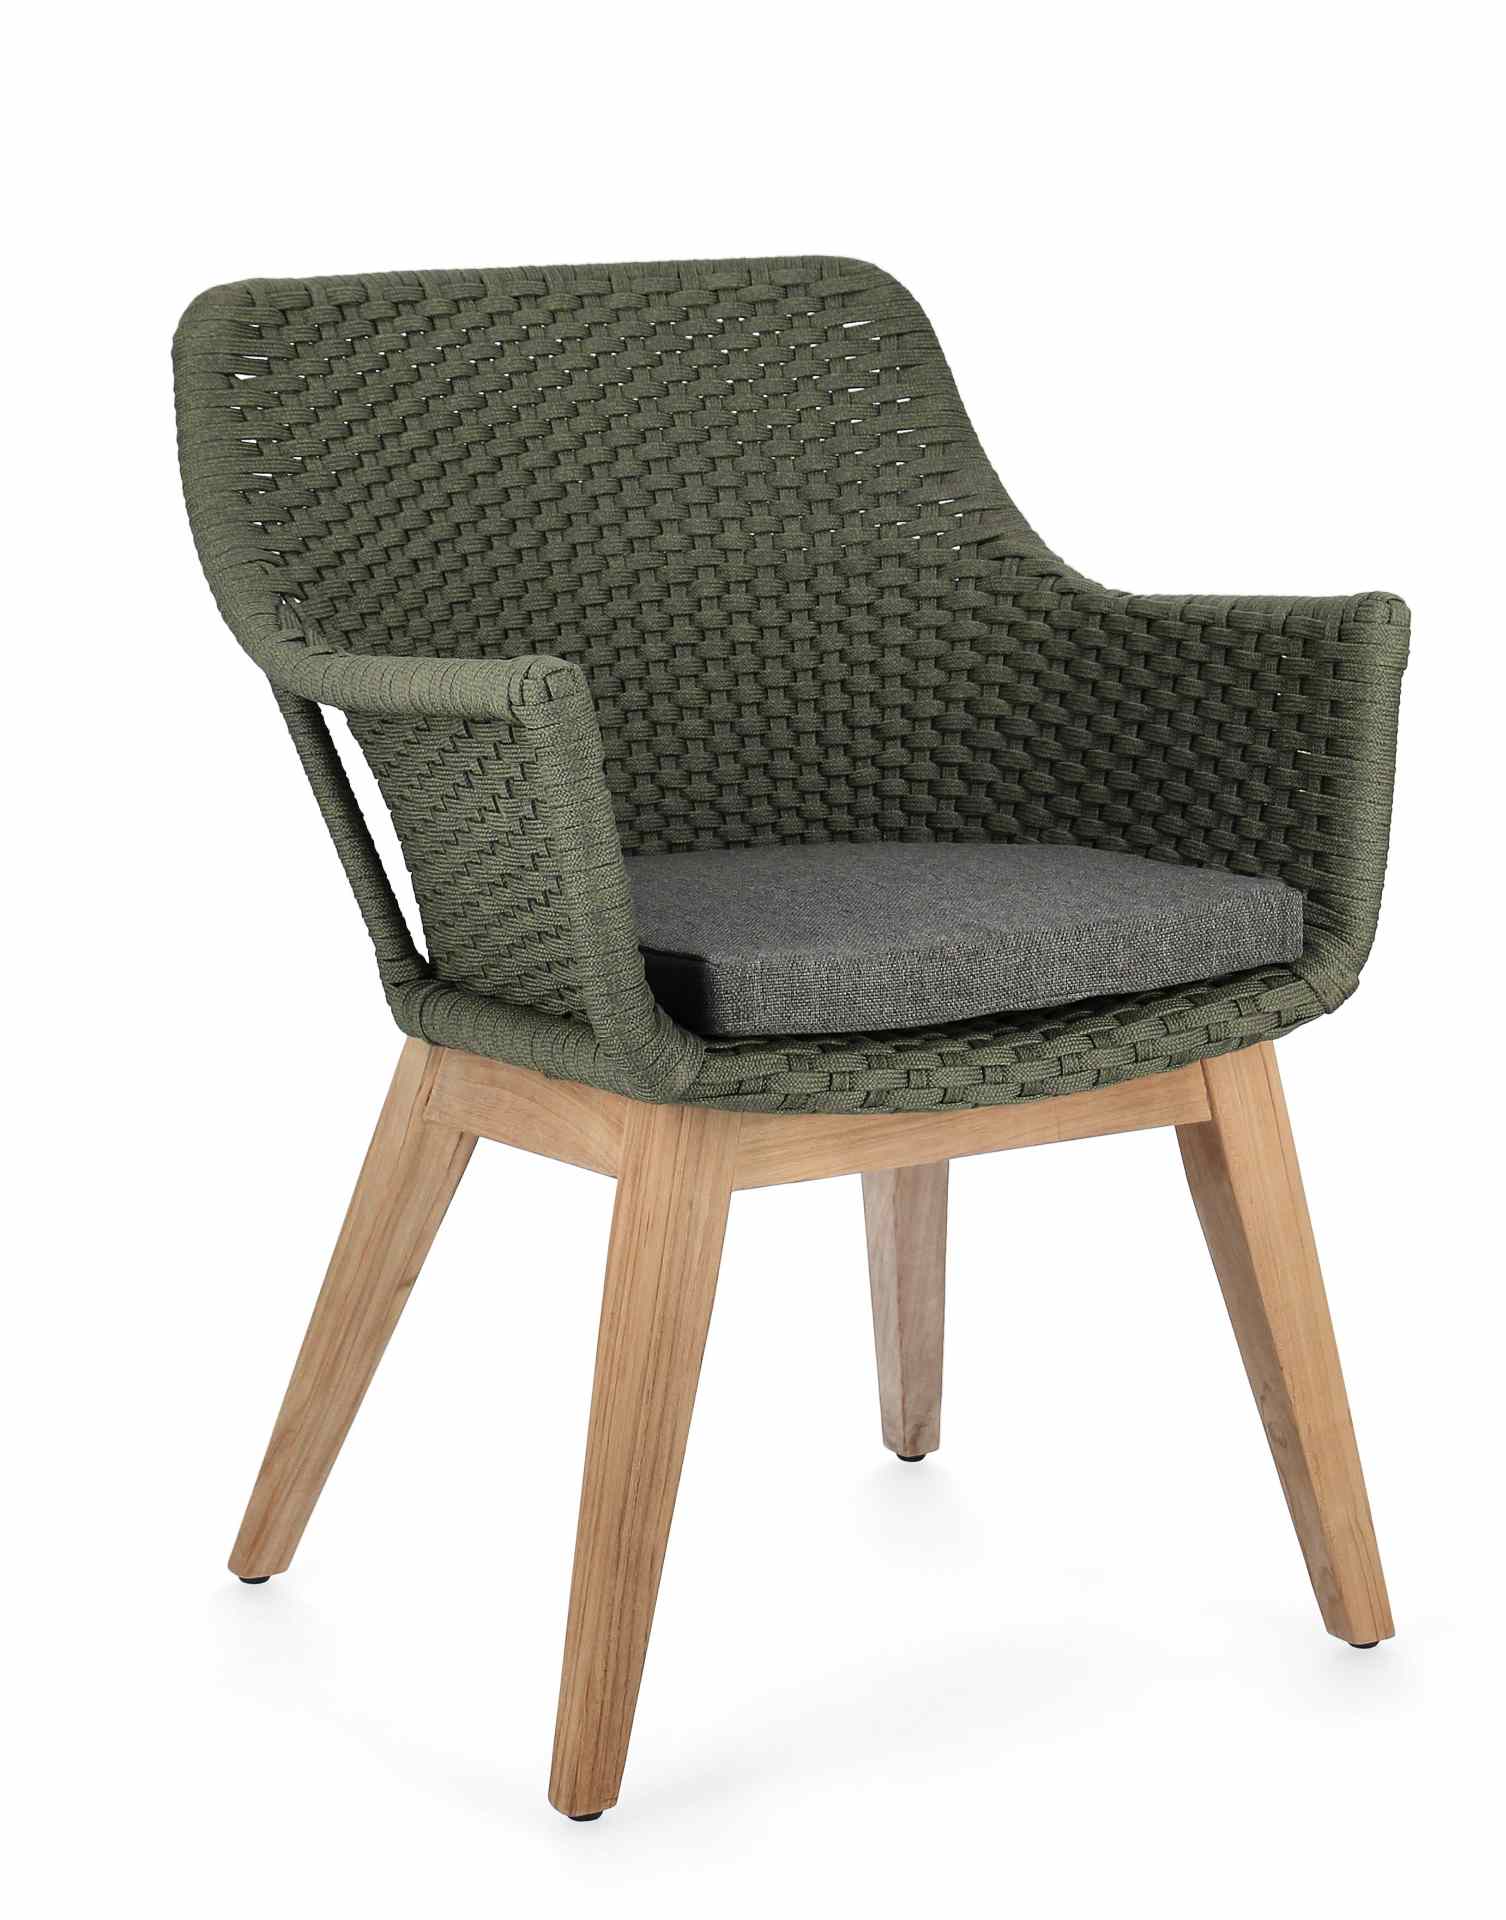 Der Gartenstuhl Allison überzeugt mit seinem modernen Design. Gefertigt wurde er aus Olefin-Stoff, welcher einen grünen Farbton besitzt. Das Gestell ist aus Teakholz und hat eine natürliche Farbe. Der Stuhl verfügt über eine Sitzhöhe von 48 cm und ist für